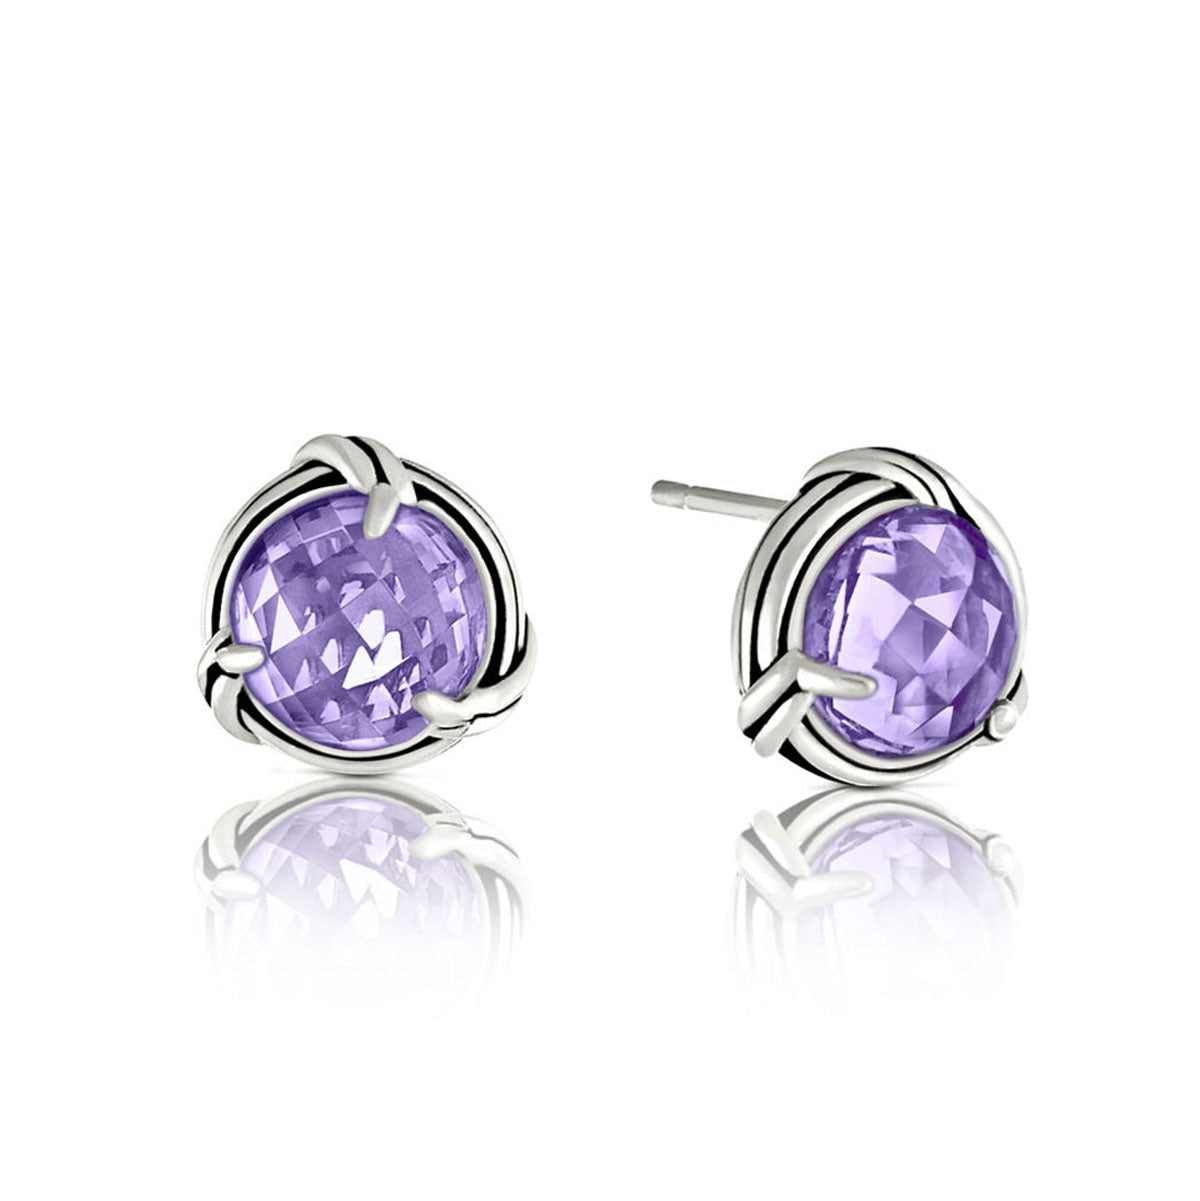 Fantasies Lavender Amethyst Stud Earrings in sterling silver 8mm